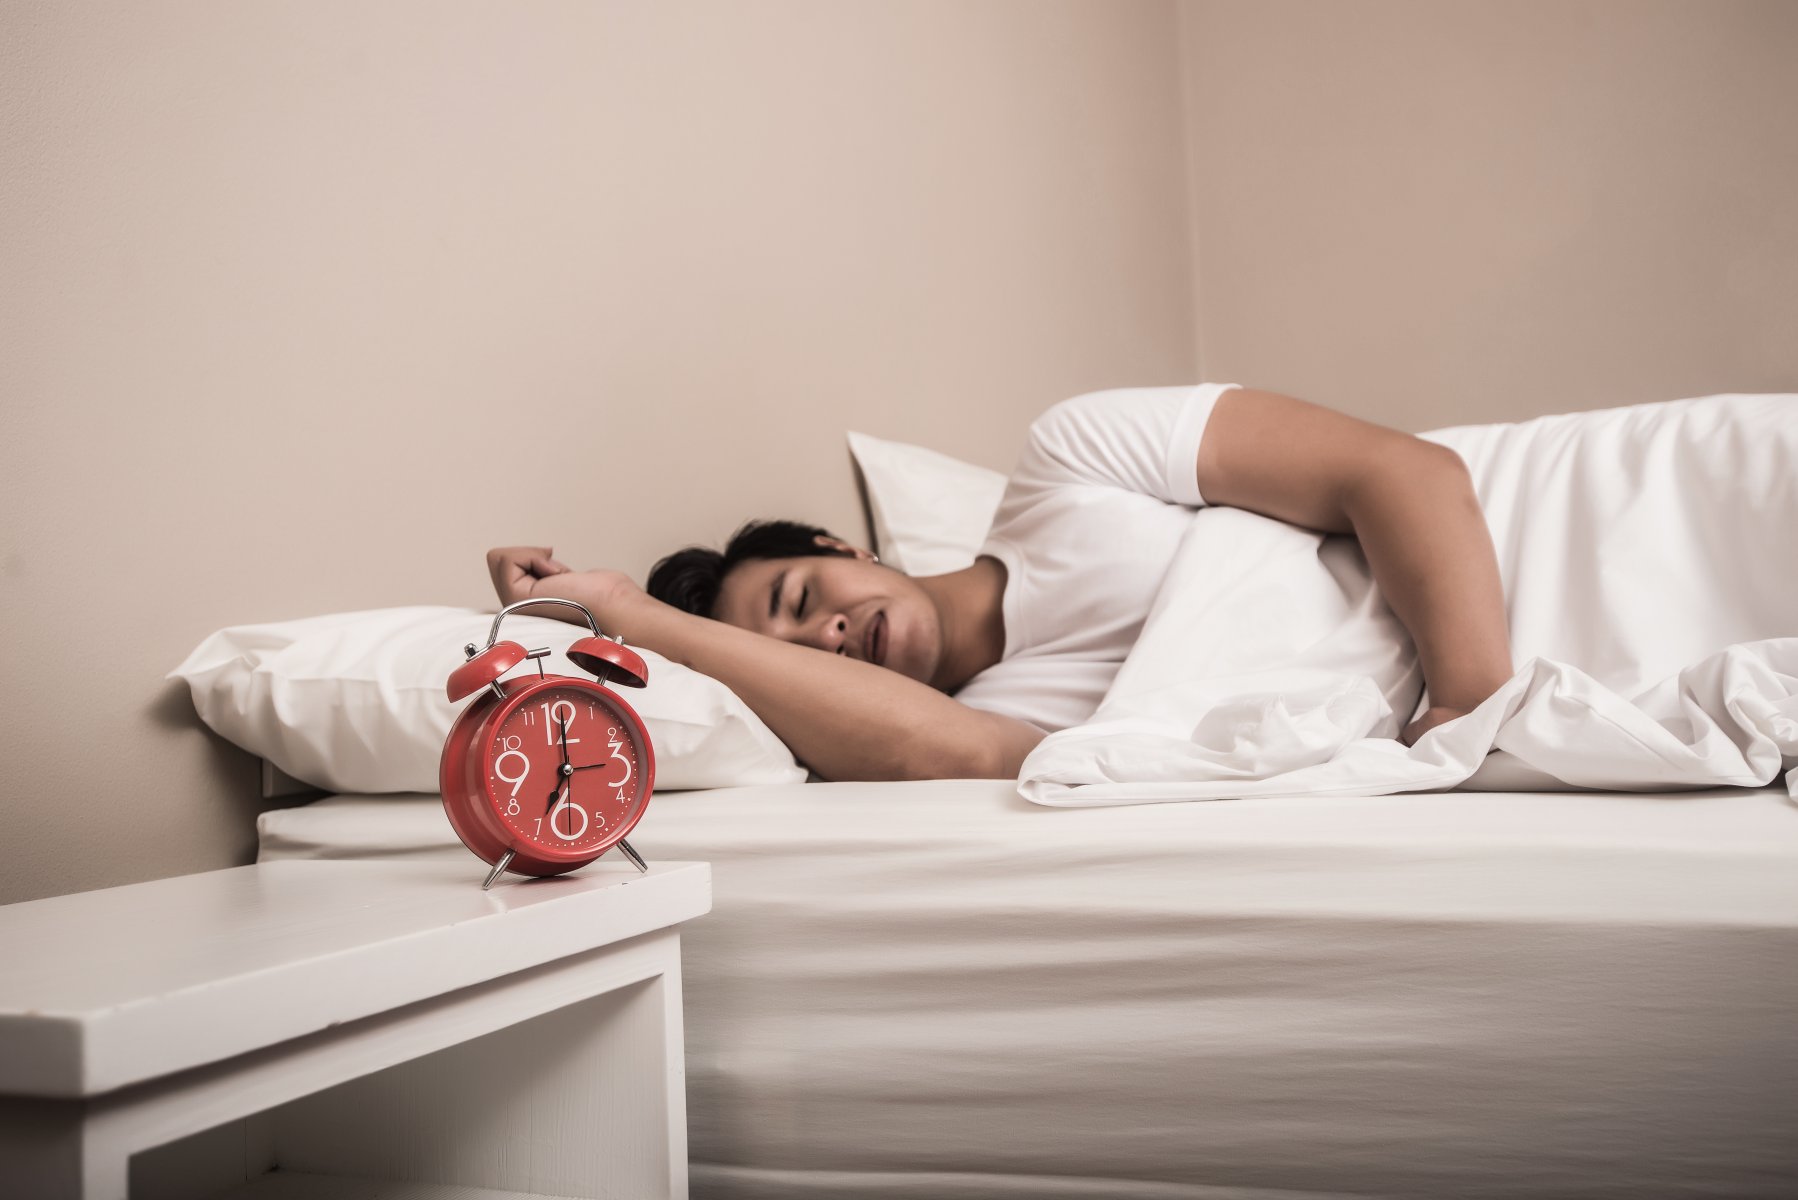 Врач: от недостатка сна может развиться неалкогольная жировая болезнь печени